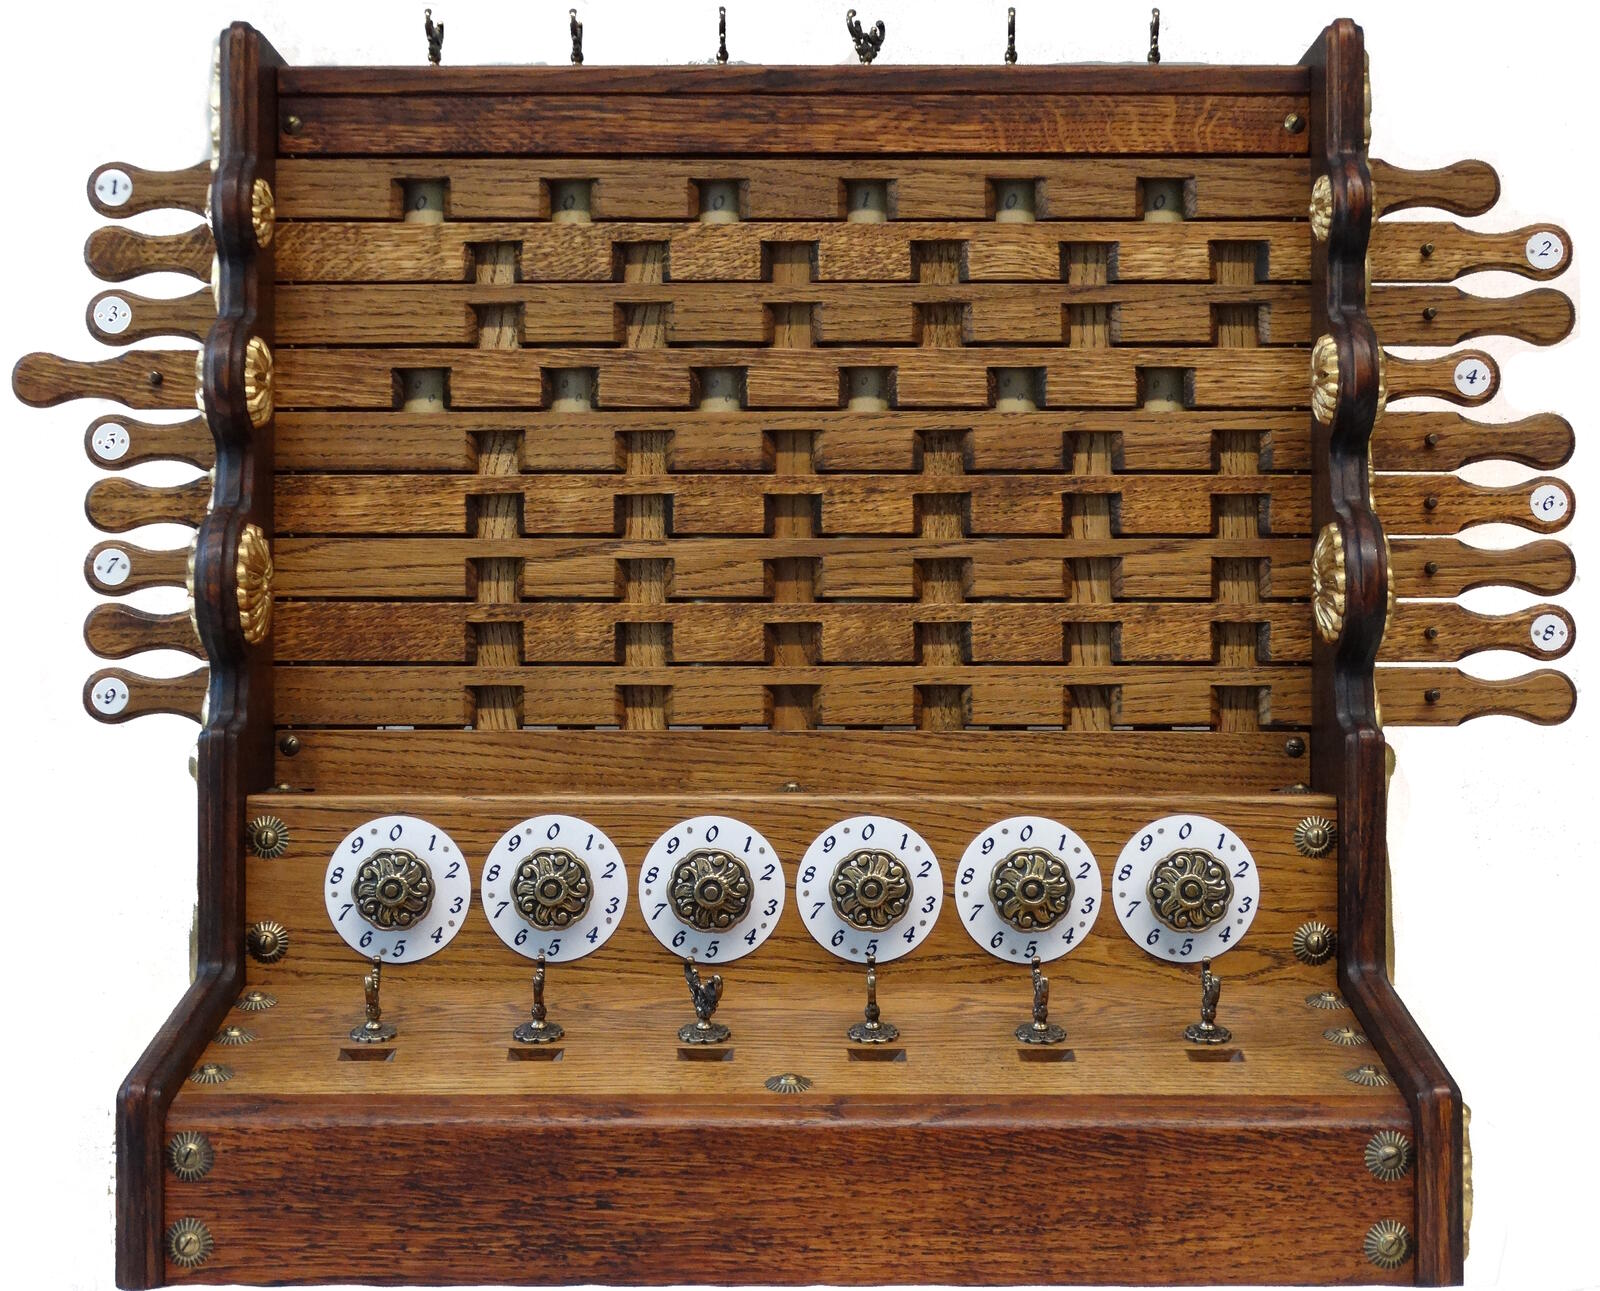 De eerste mechanische rekenklok van Schickard (1623), die dit jaar haar 400e jubileum viert.